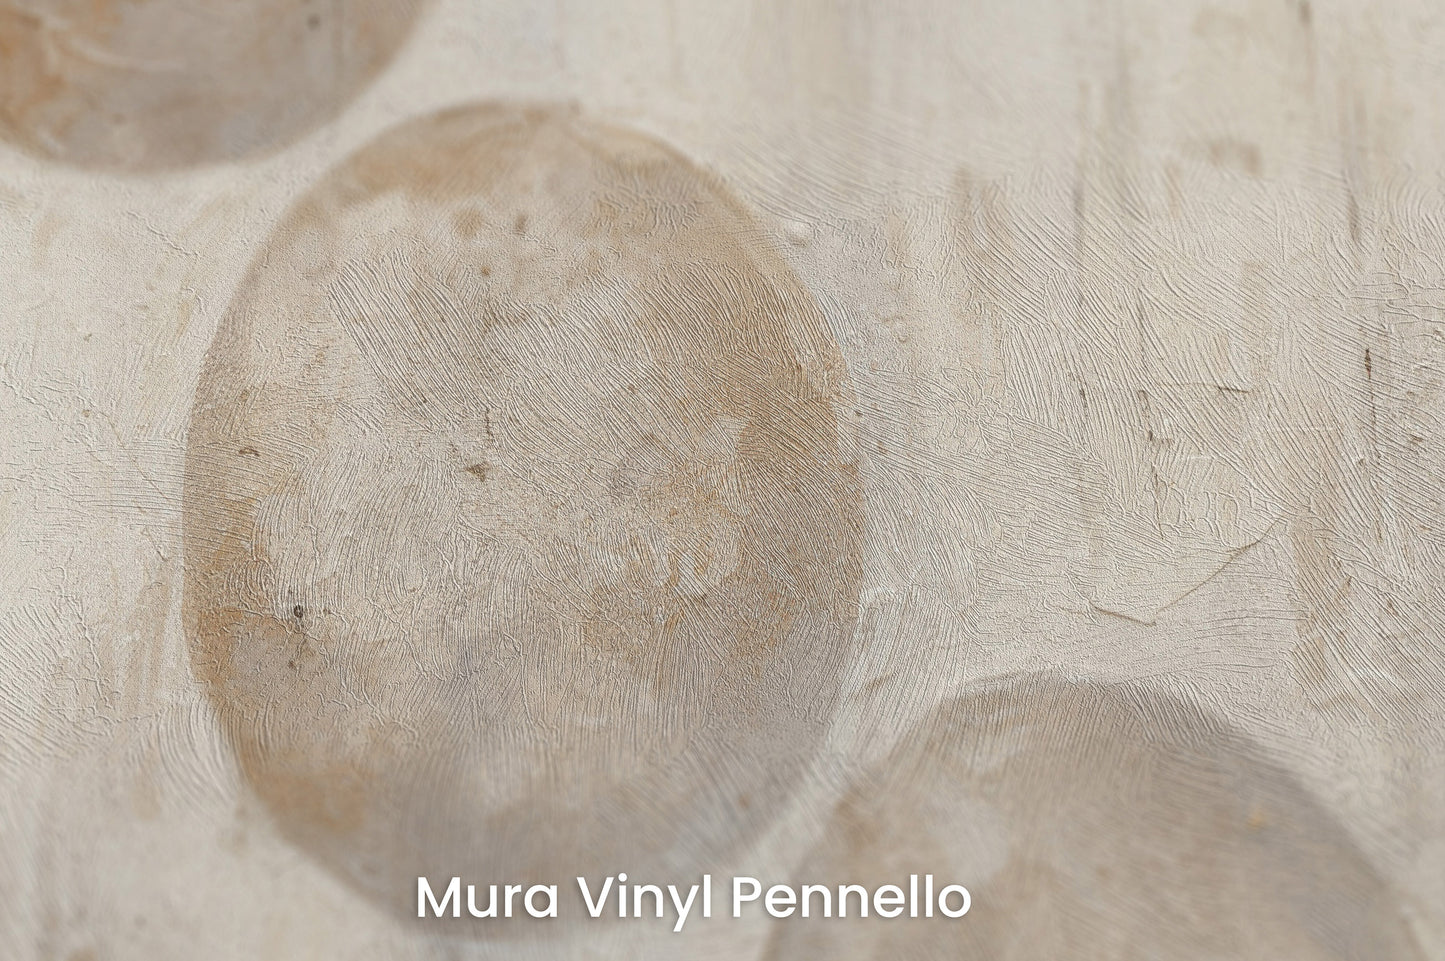 Zbliżenie na artystyczną fototapetę o nazwie SPHERICAL HARMONY ABSTRACT na podłożu Mura Vinyl Pennello - faktura pociągnięć pędzla malarskiego.